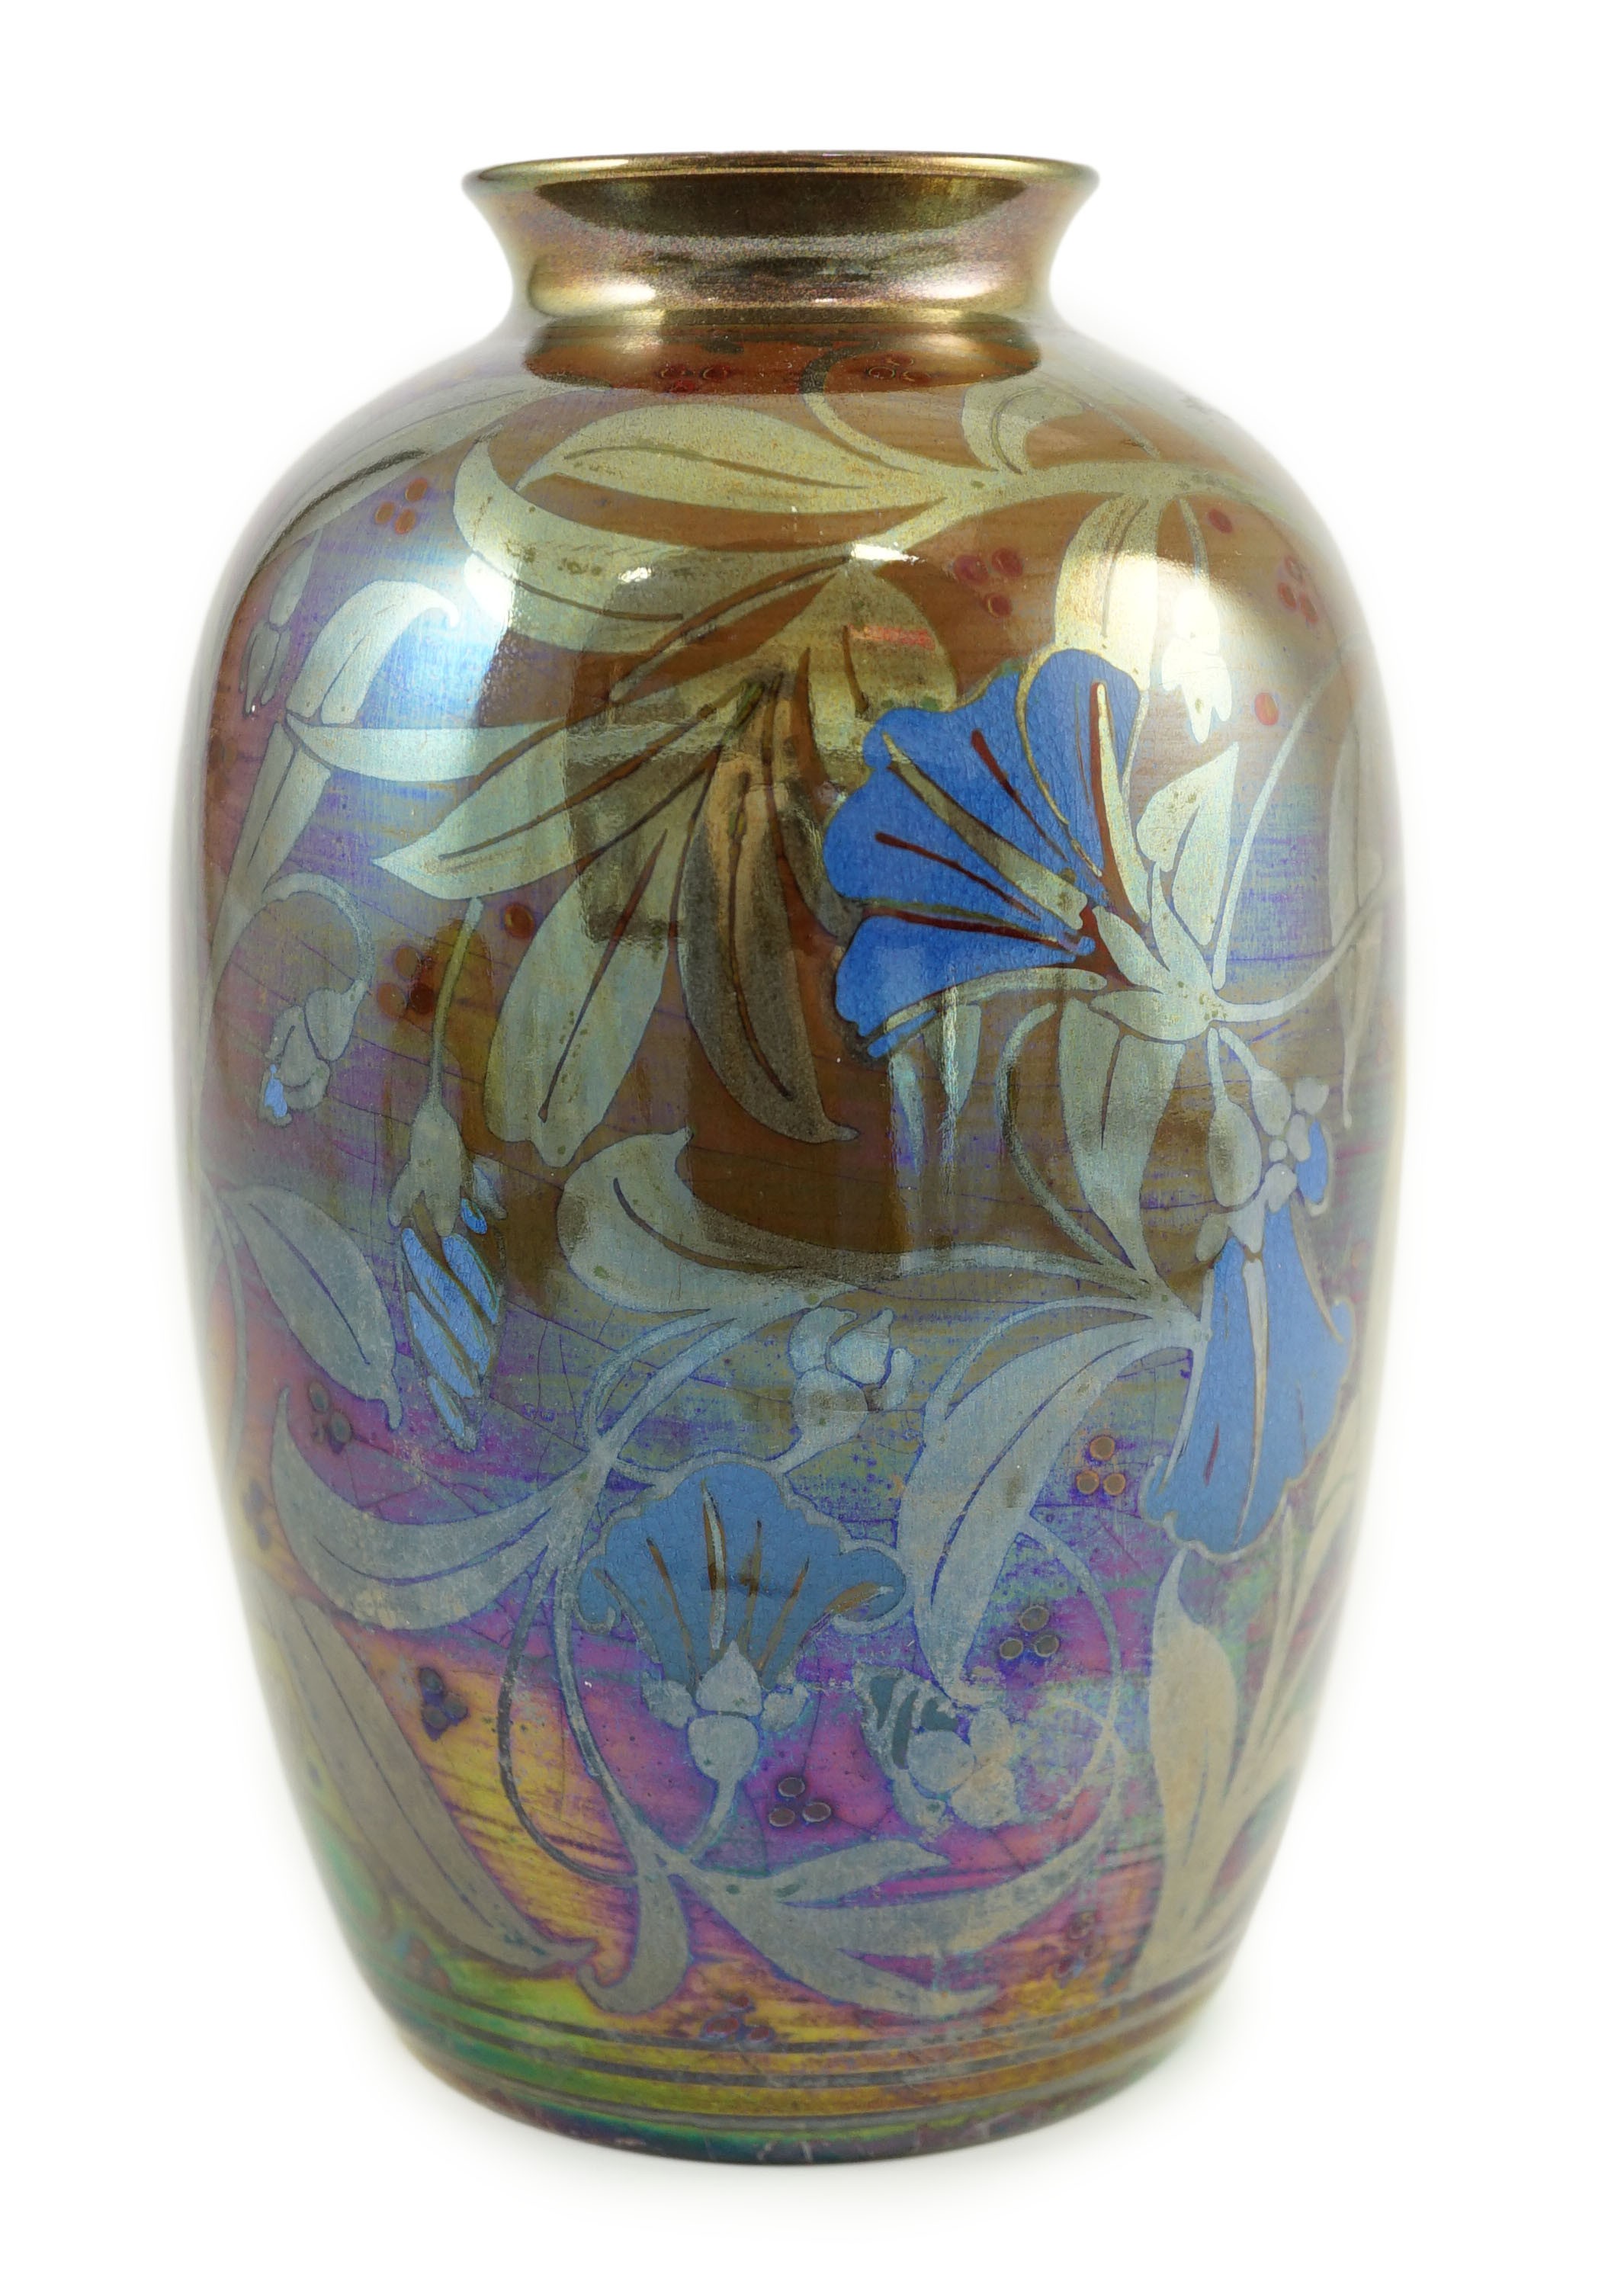 A Pilkington's Lancastrian ovoid vase, by William S. Mycock, 1923, 19cm high                                                                                                                                                